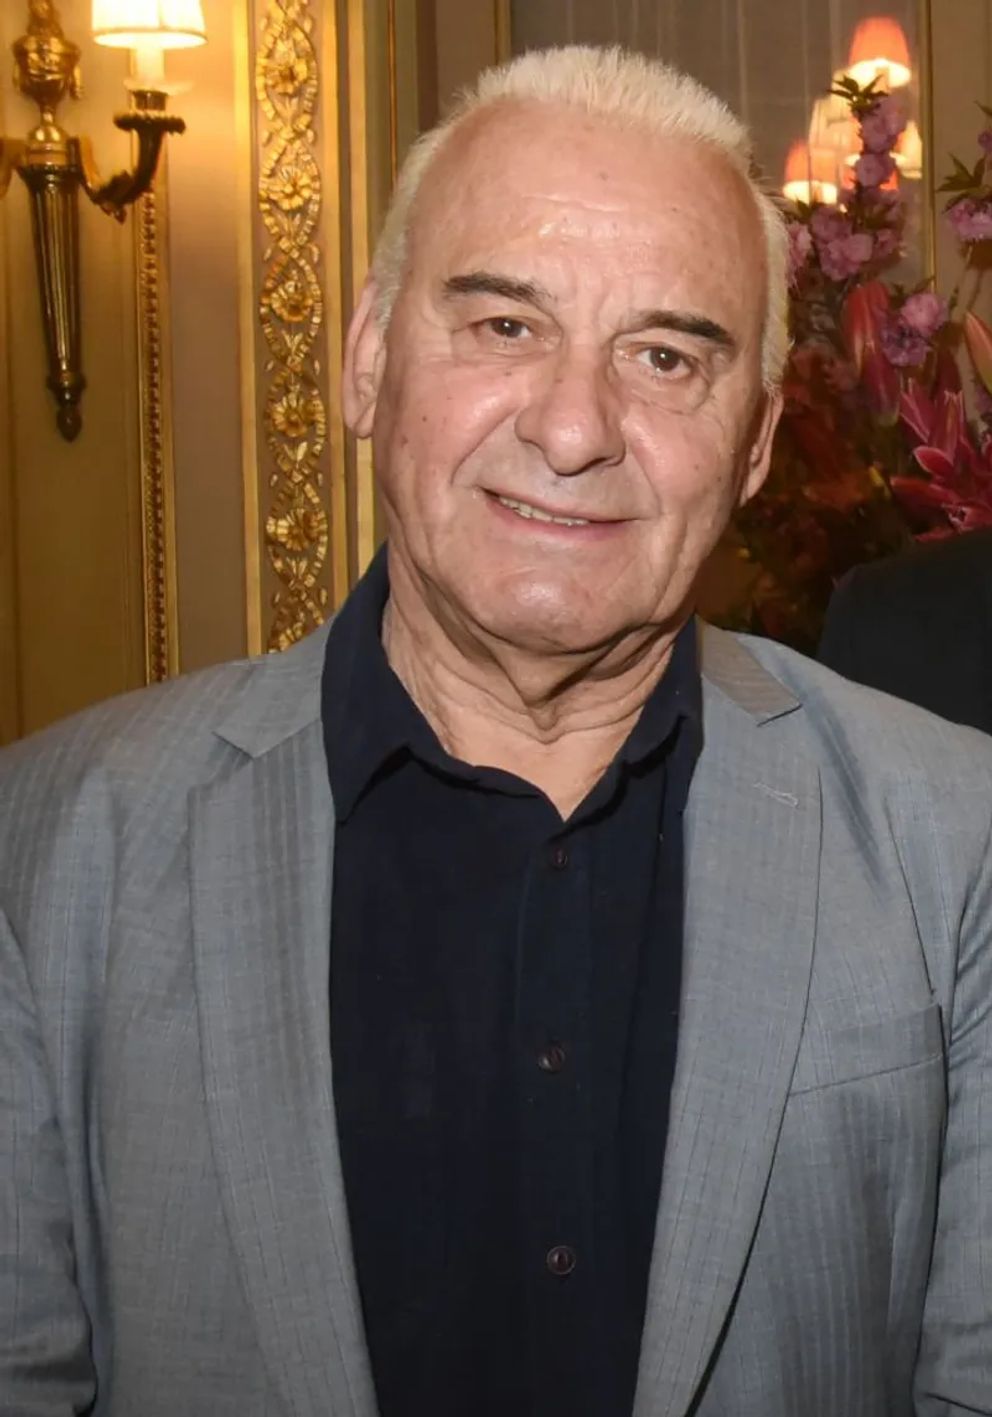 Michel Fugain assiste à "Sardou Regards" Lancement du livre de Bastien Kossek à l'hôtel Raphael le 15 avril 2019 à Paris. | Photo : Getty Images